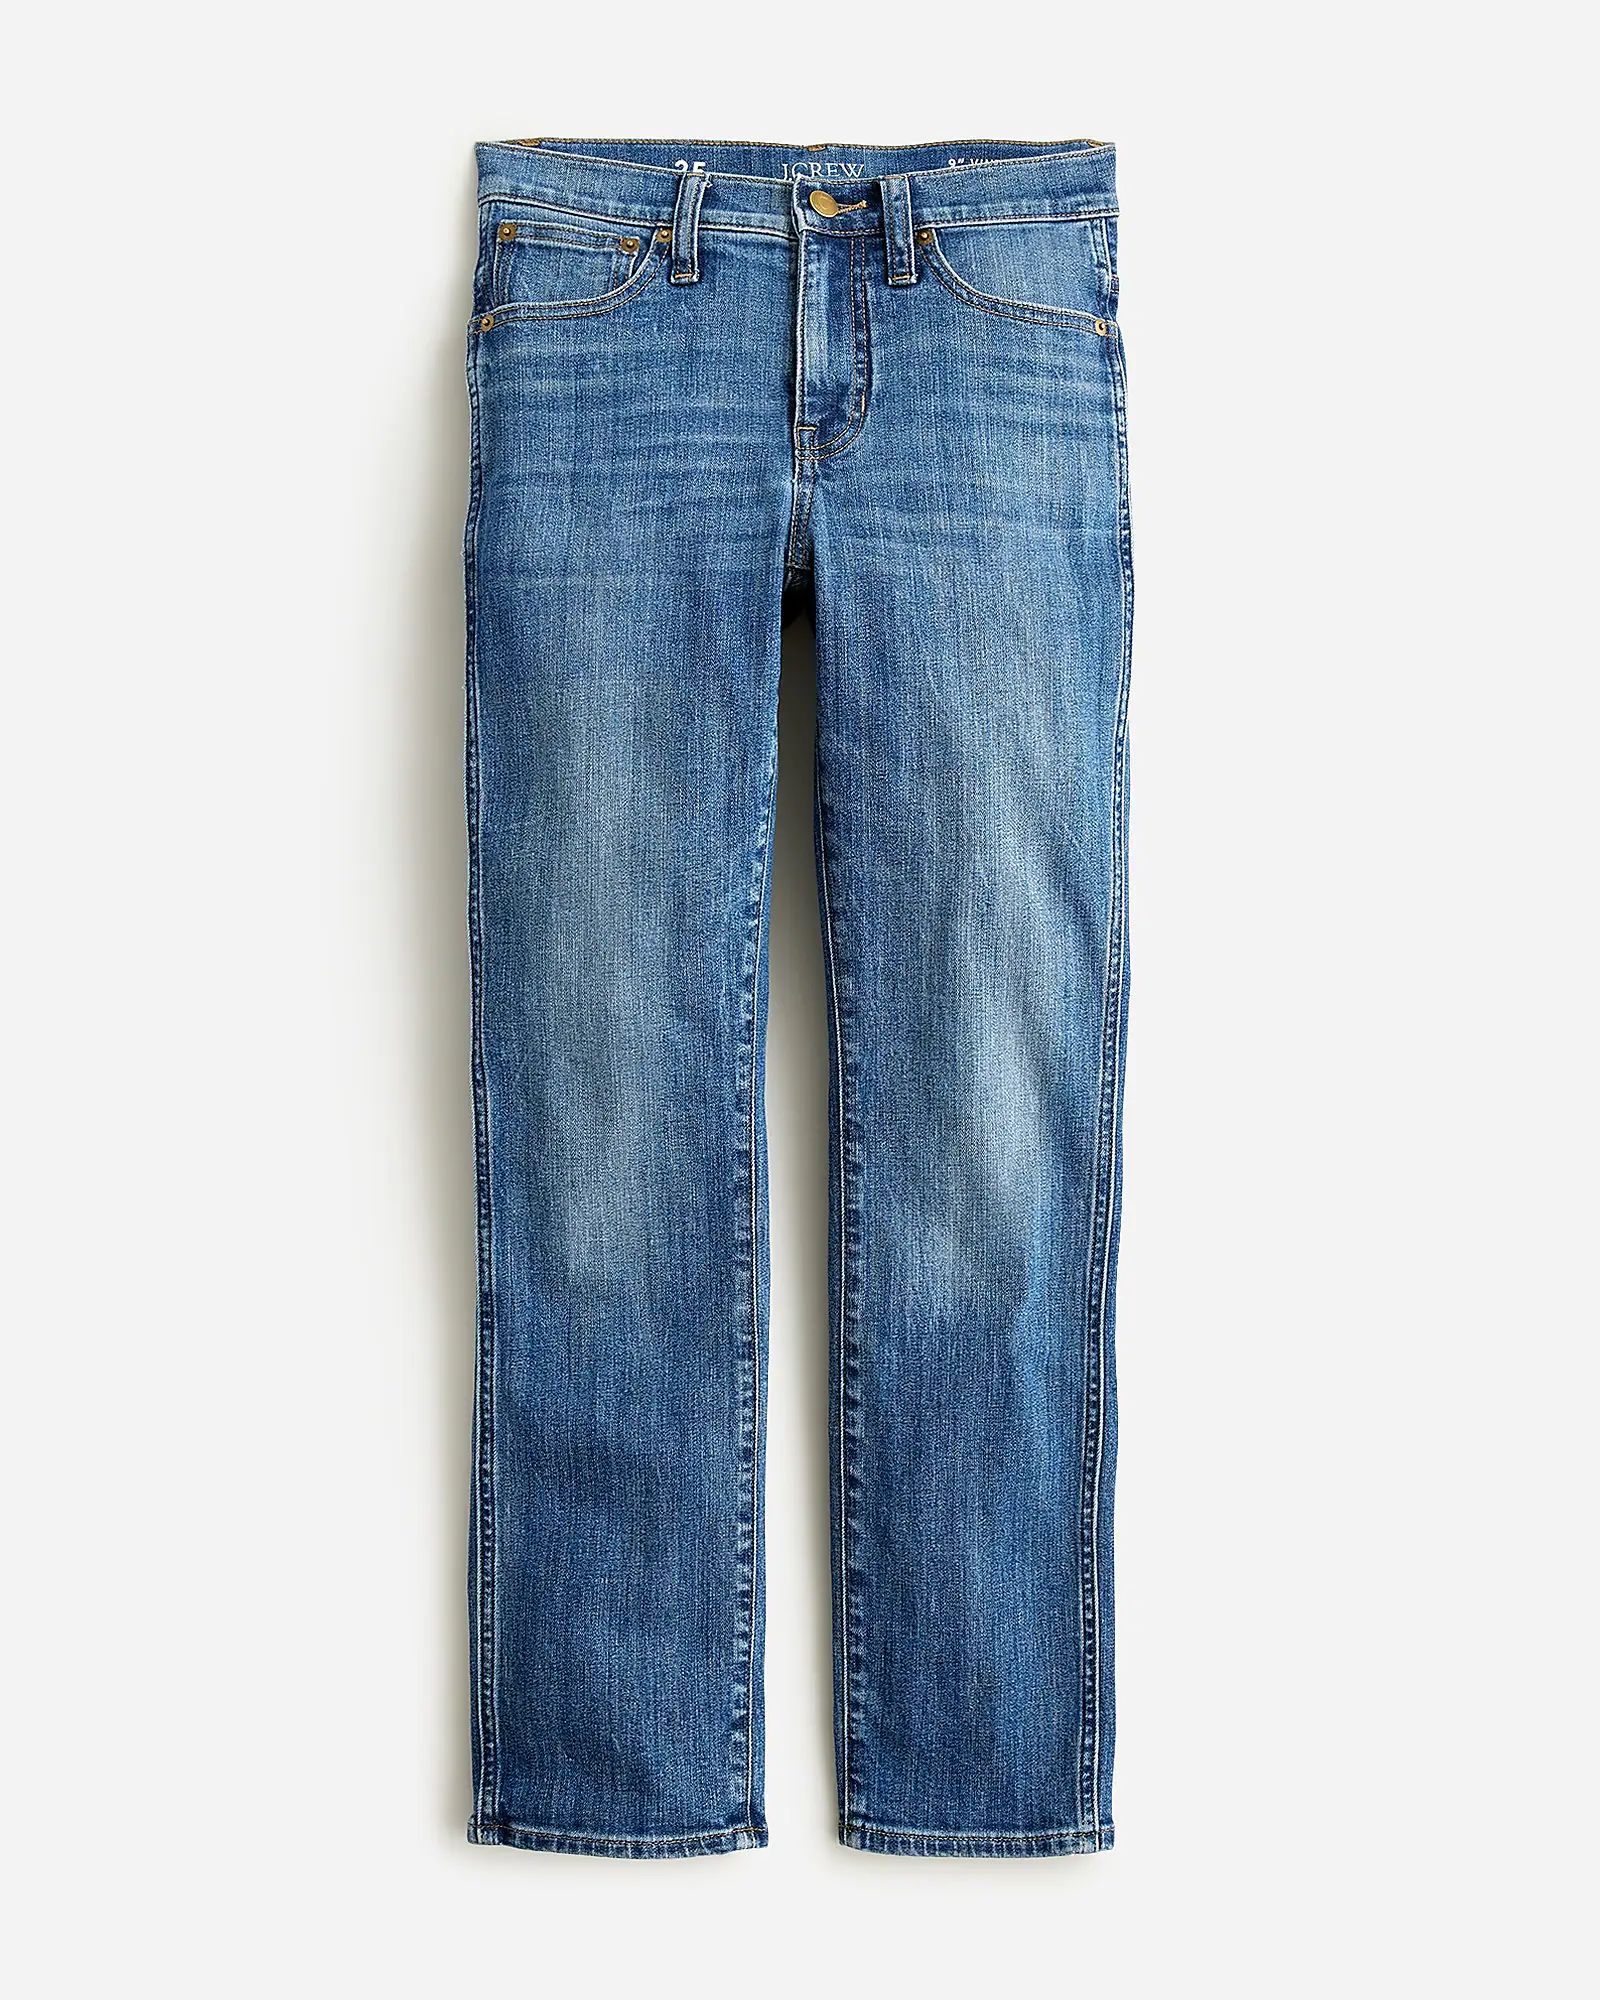 9" vintage slim-straight jean in Bensen wash | J.Crew US